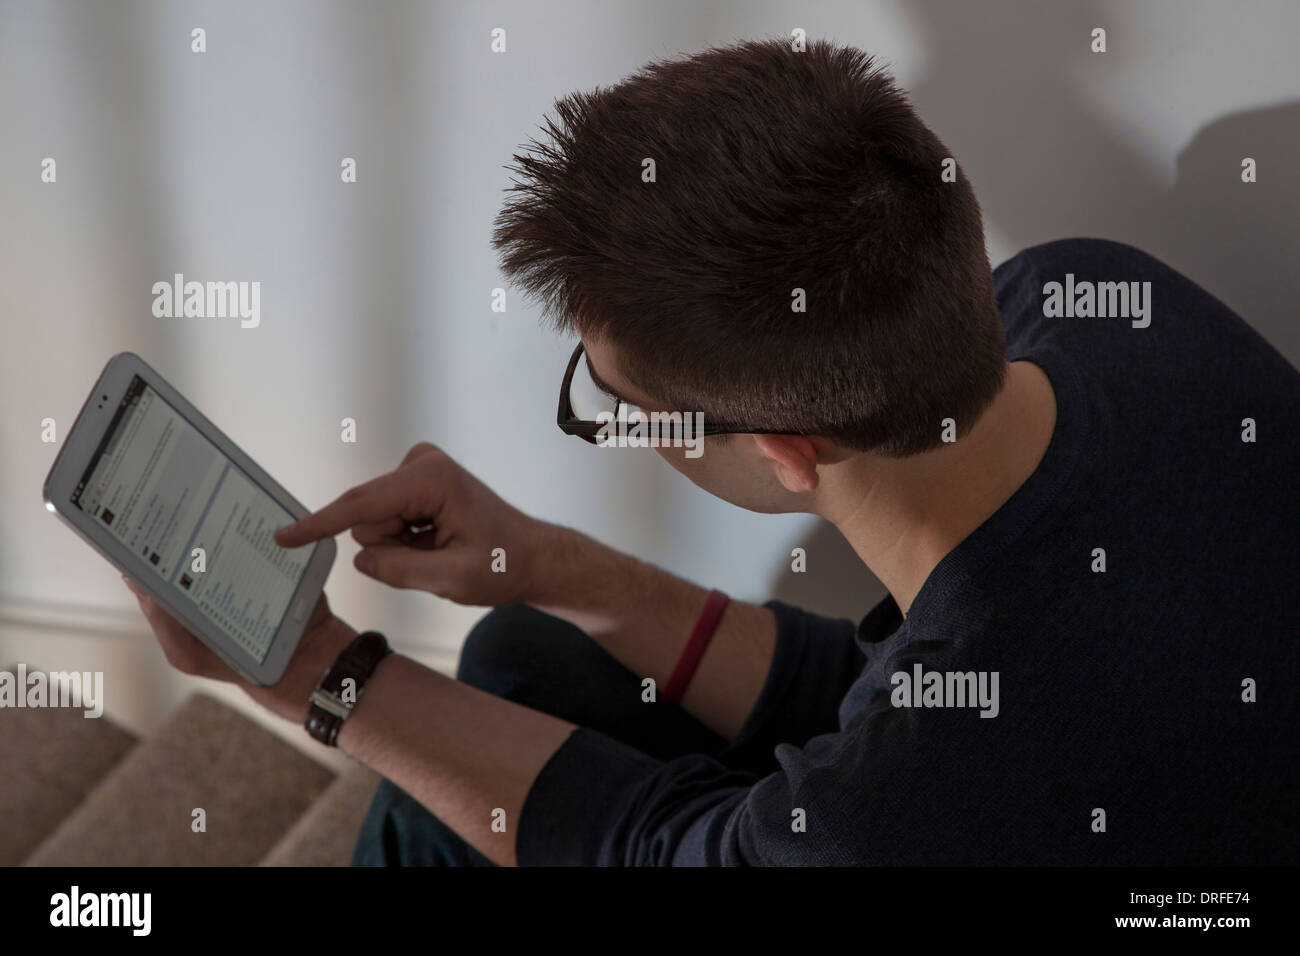 Sulla spalla shot dell'uomo con gli occhiali la visualizzazione di un sito Web di networking sul touch screen digitale compressa. Foto Stock